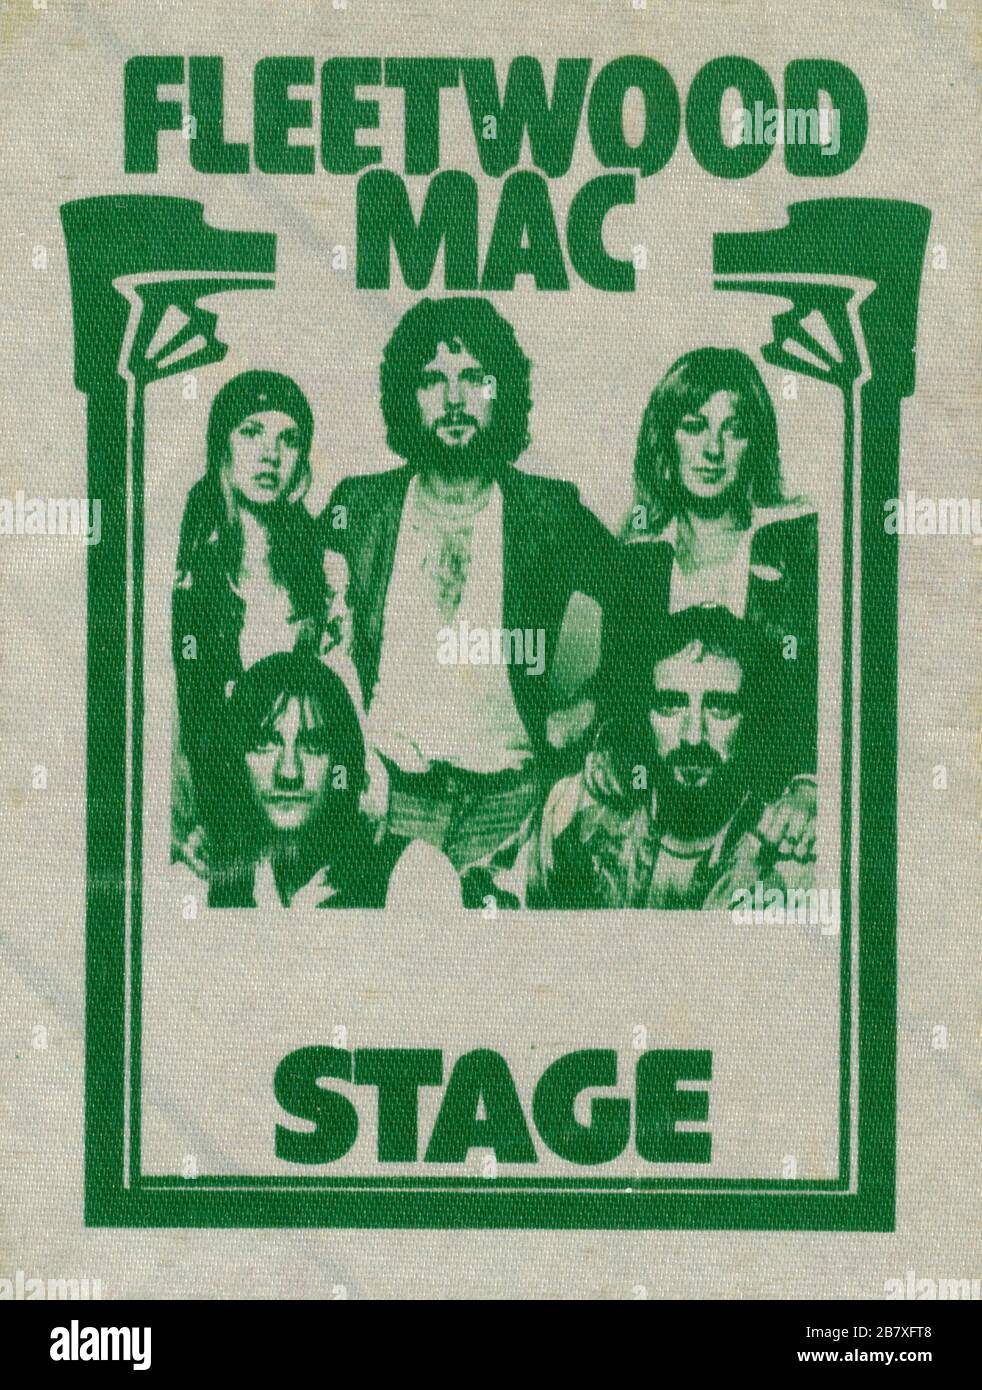 Il Backstage Pass ufficiale di Fleetwood Mac dal concerto del 24 giugno 1976 presso lo spettacolo DELLA MECCA Arena a Milwaukee, Wisconsin. Questo passo era in realtà il passo turistico di Fleetwood. Questo non era insolito quell'anno, ma all'inizio degli anni '70 la maggior parte delle band non stampava i propri passi. Per vedere le mie altre immagini d'epoca legate alla musica, Cerca: Prestor vintage music Foto Stock